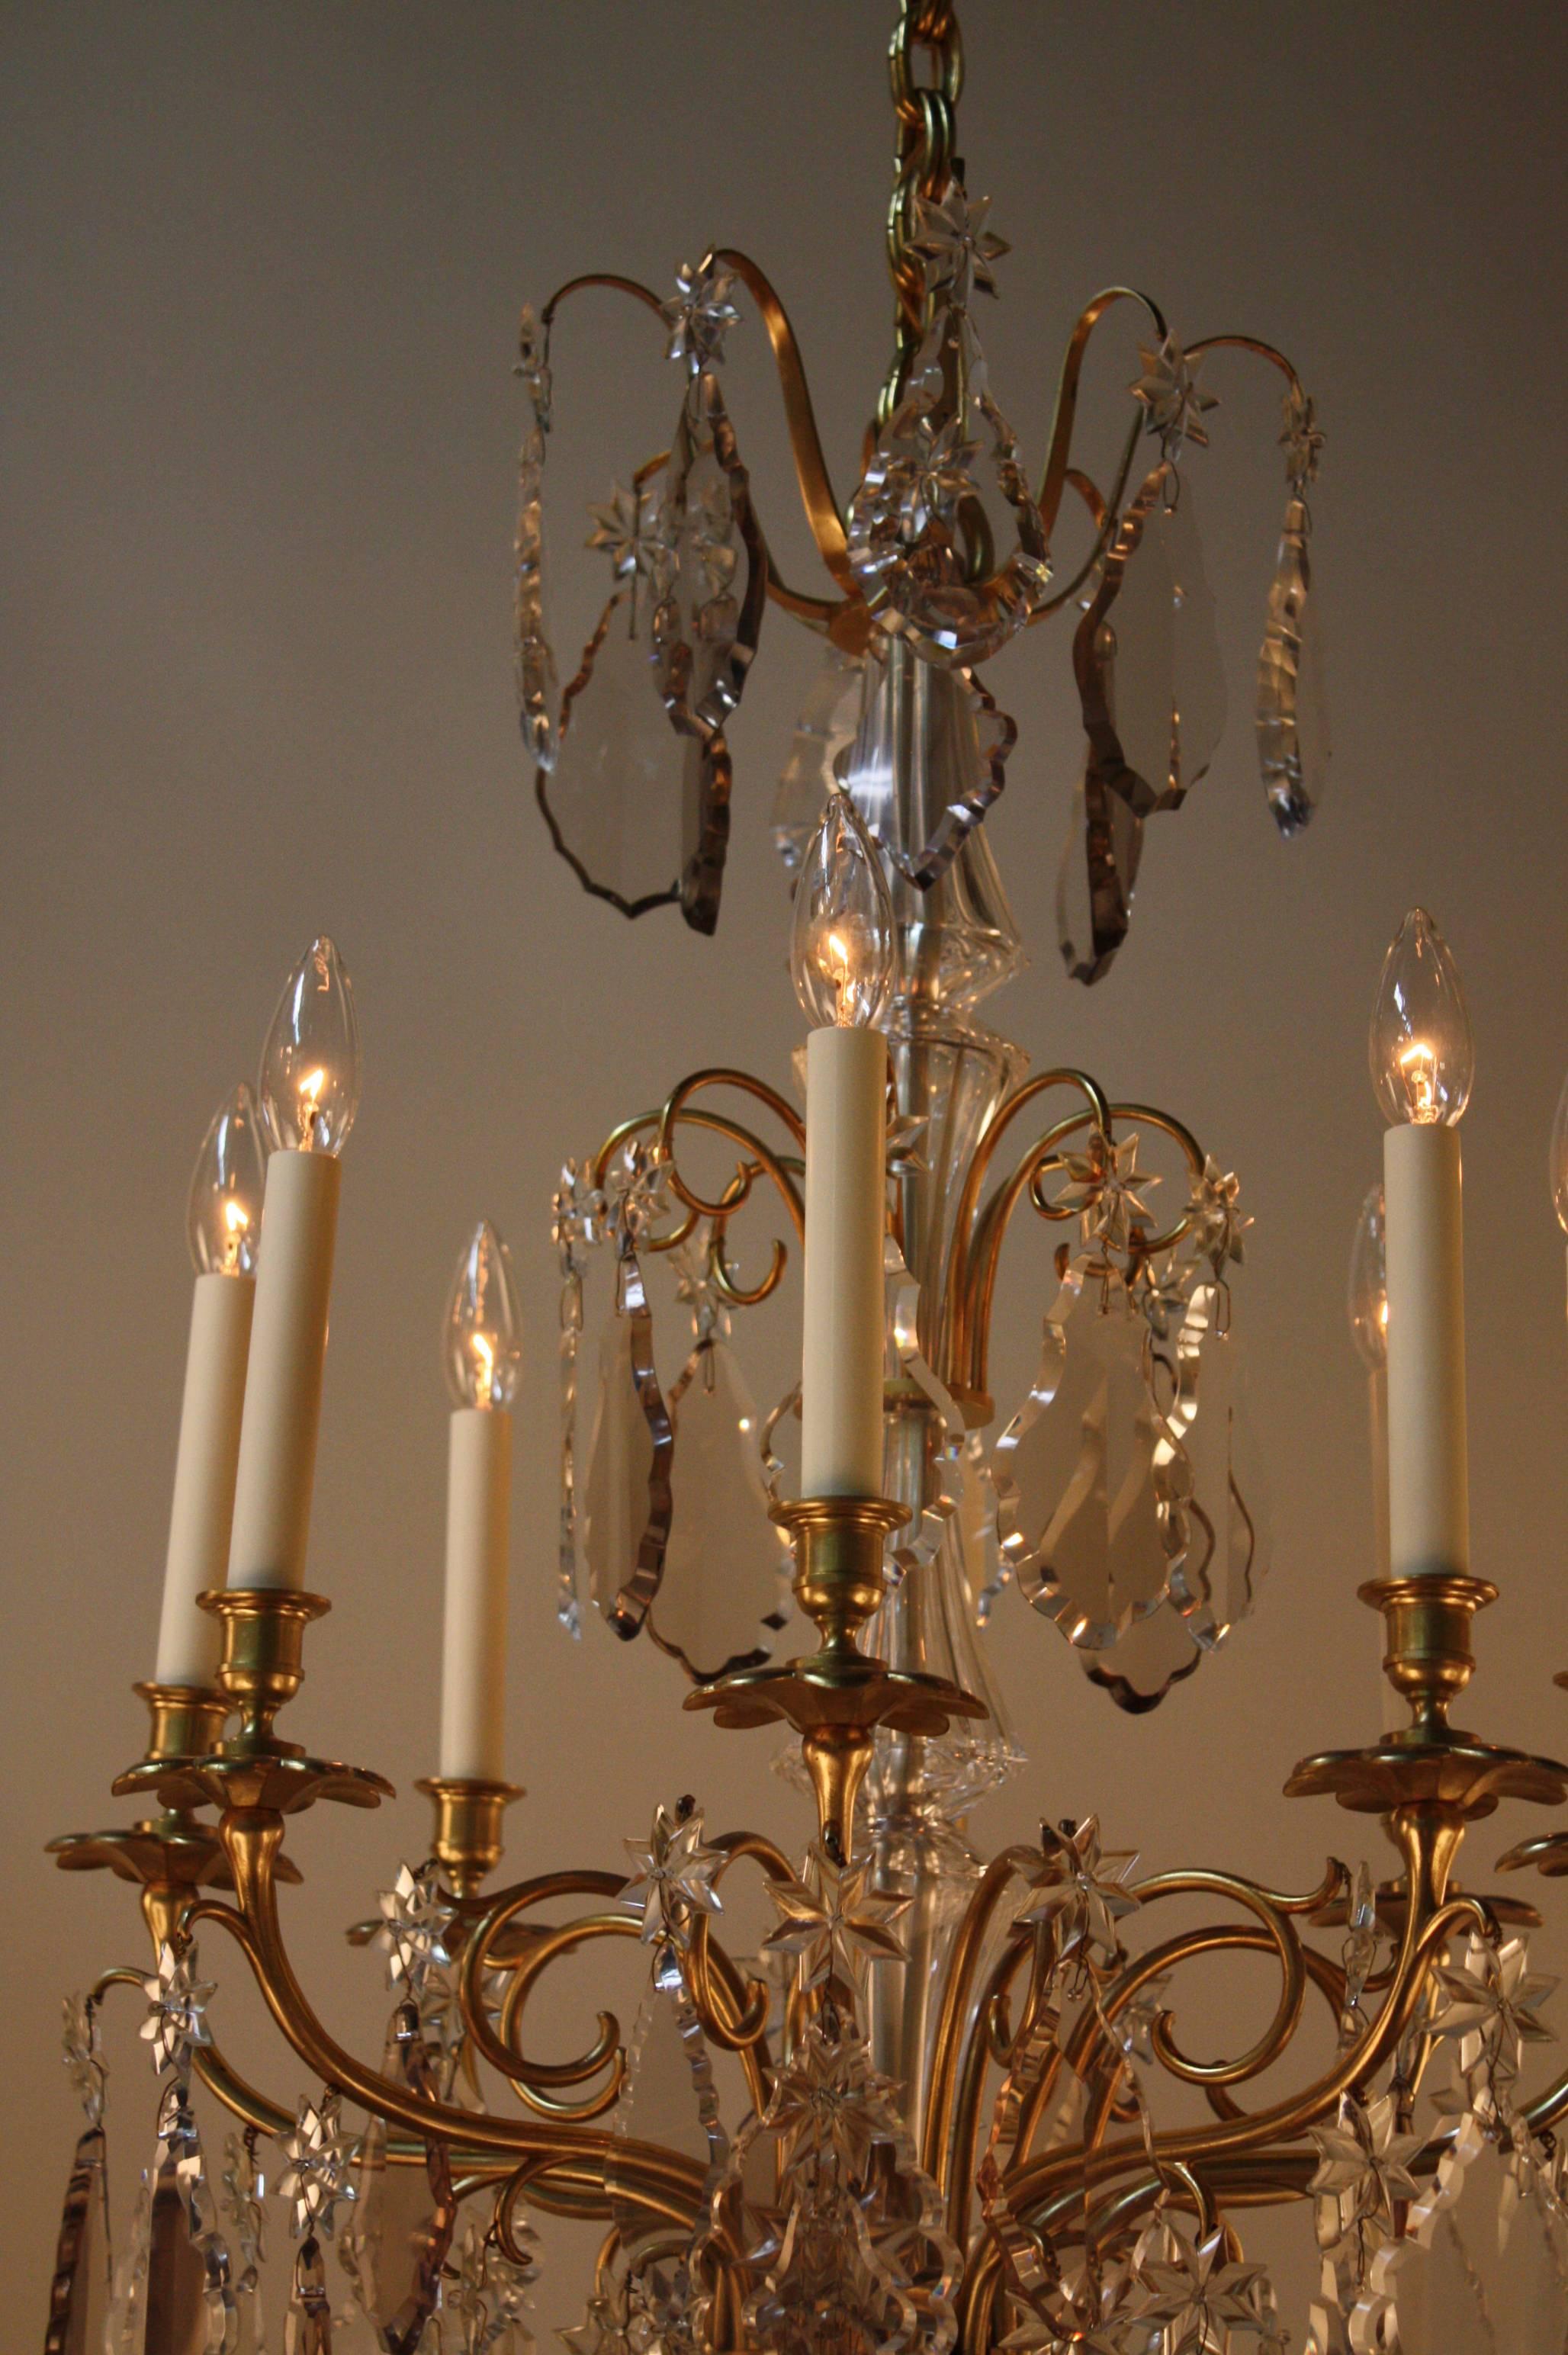 1930s chandeliers